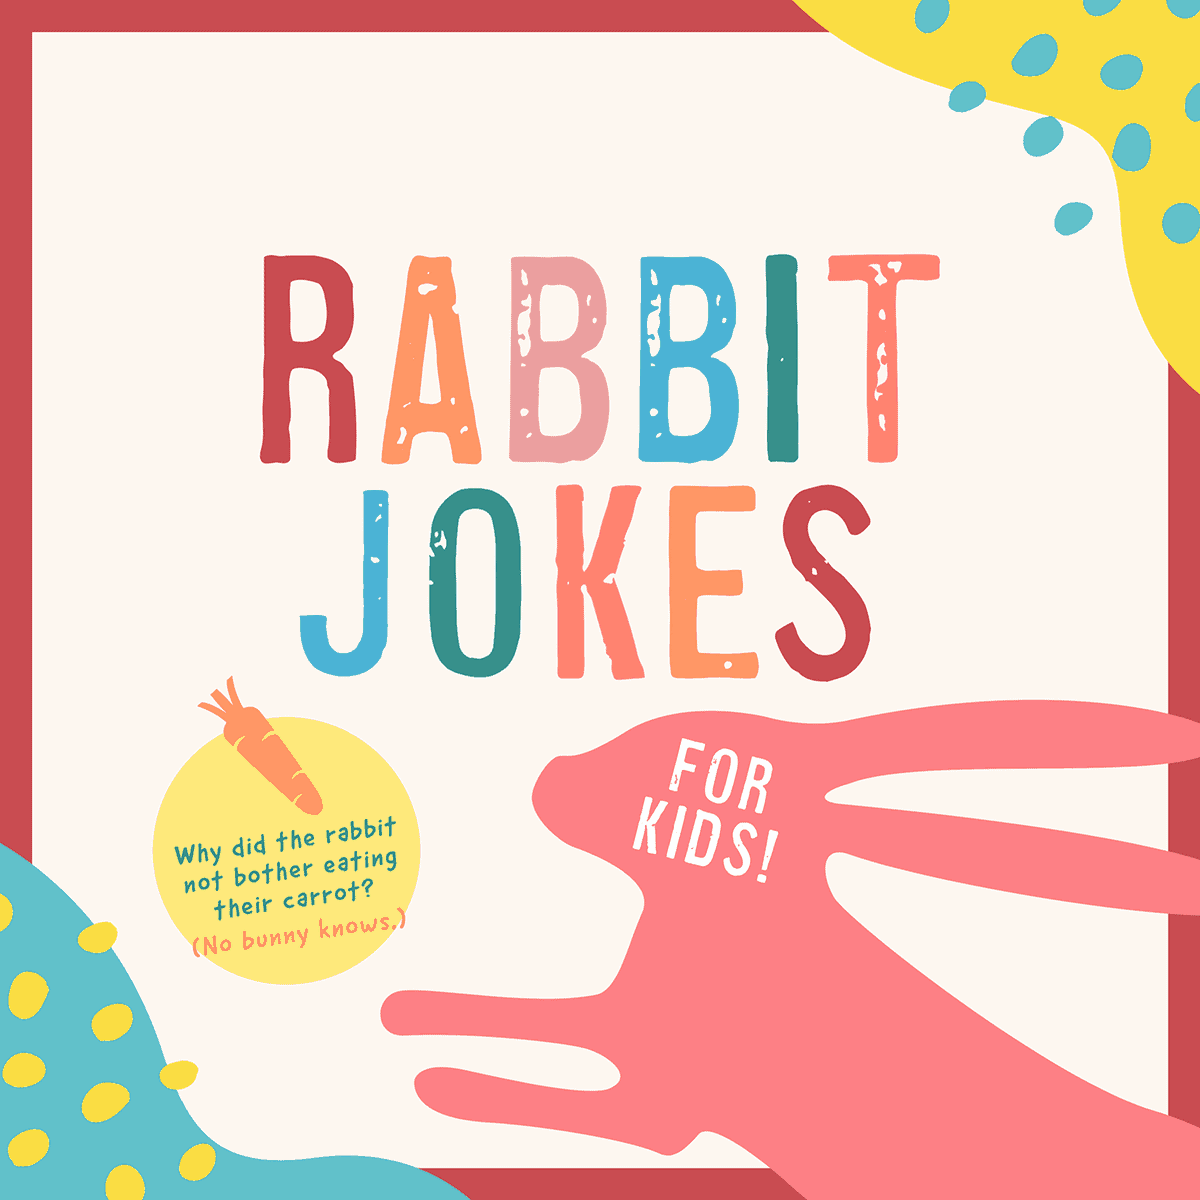 rabbit jokes for kids